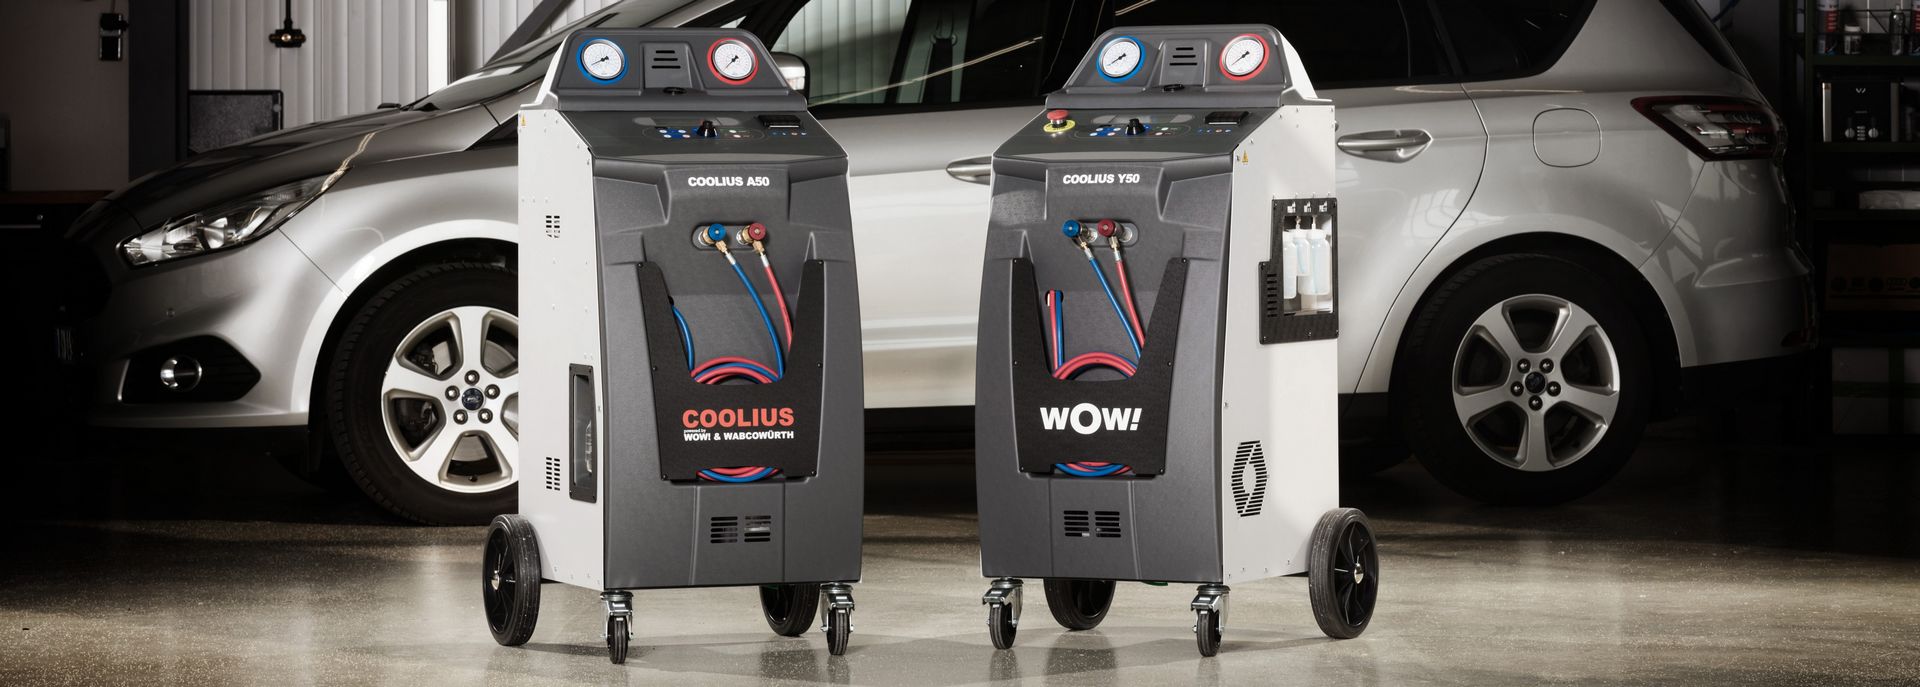 COOLIUS : stations de recharge de climatisation